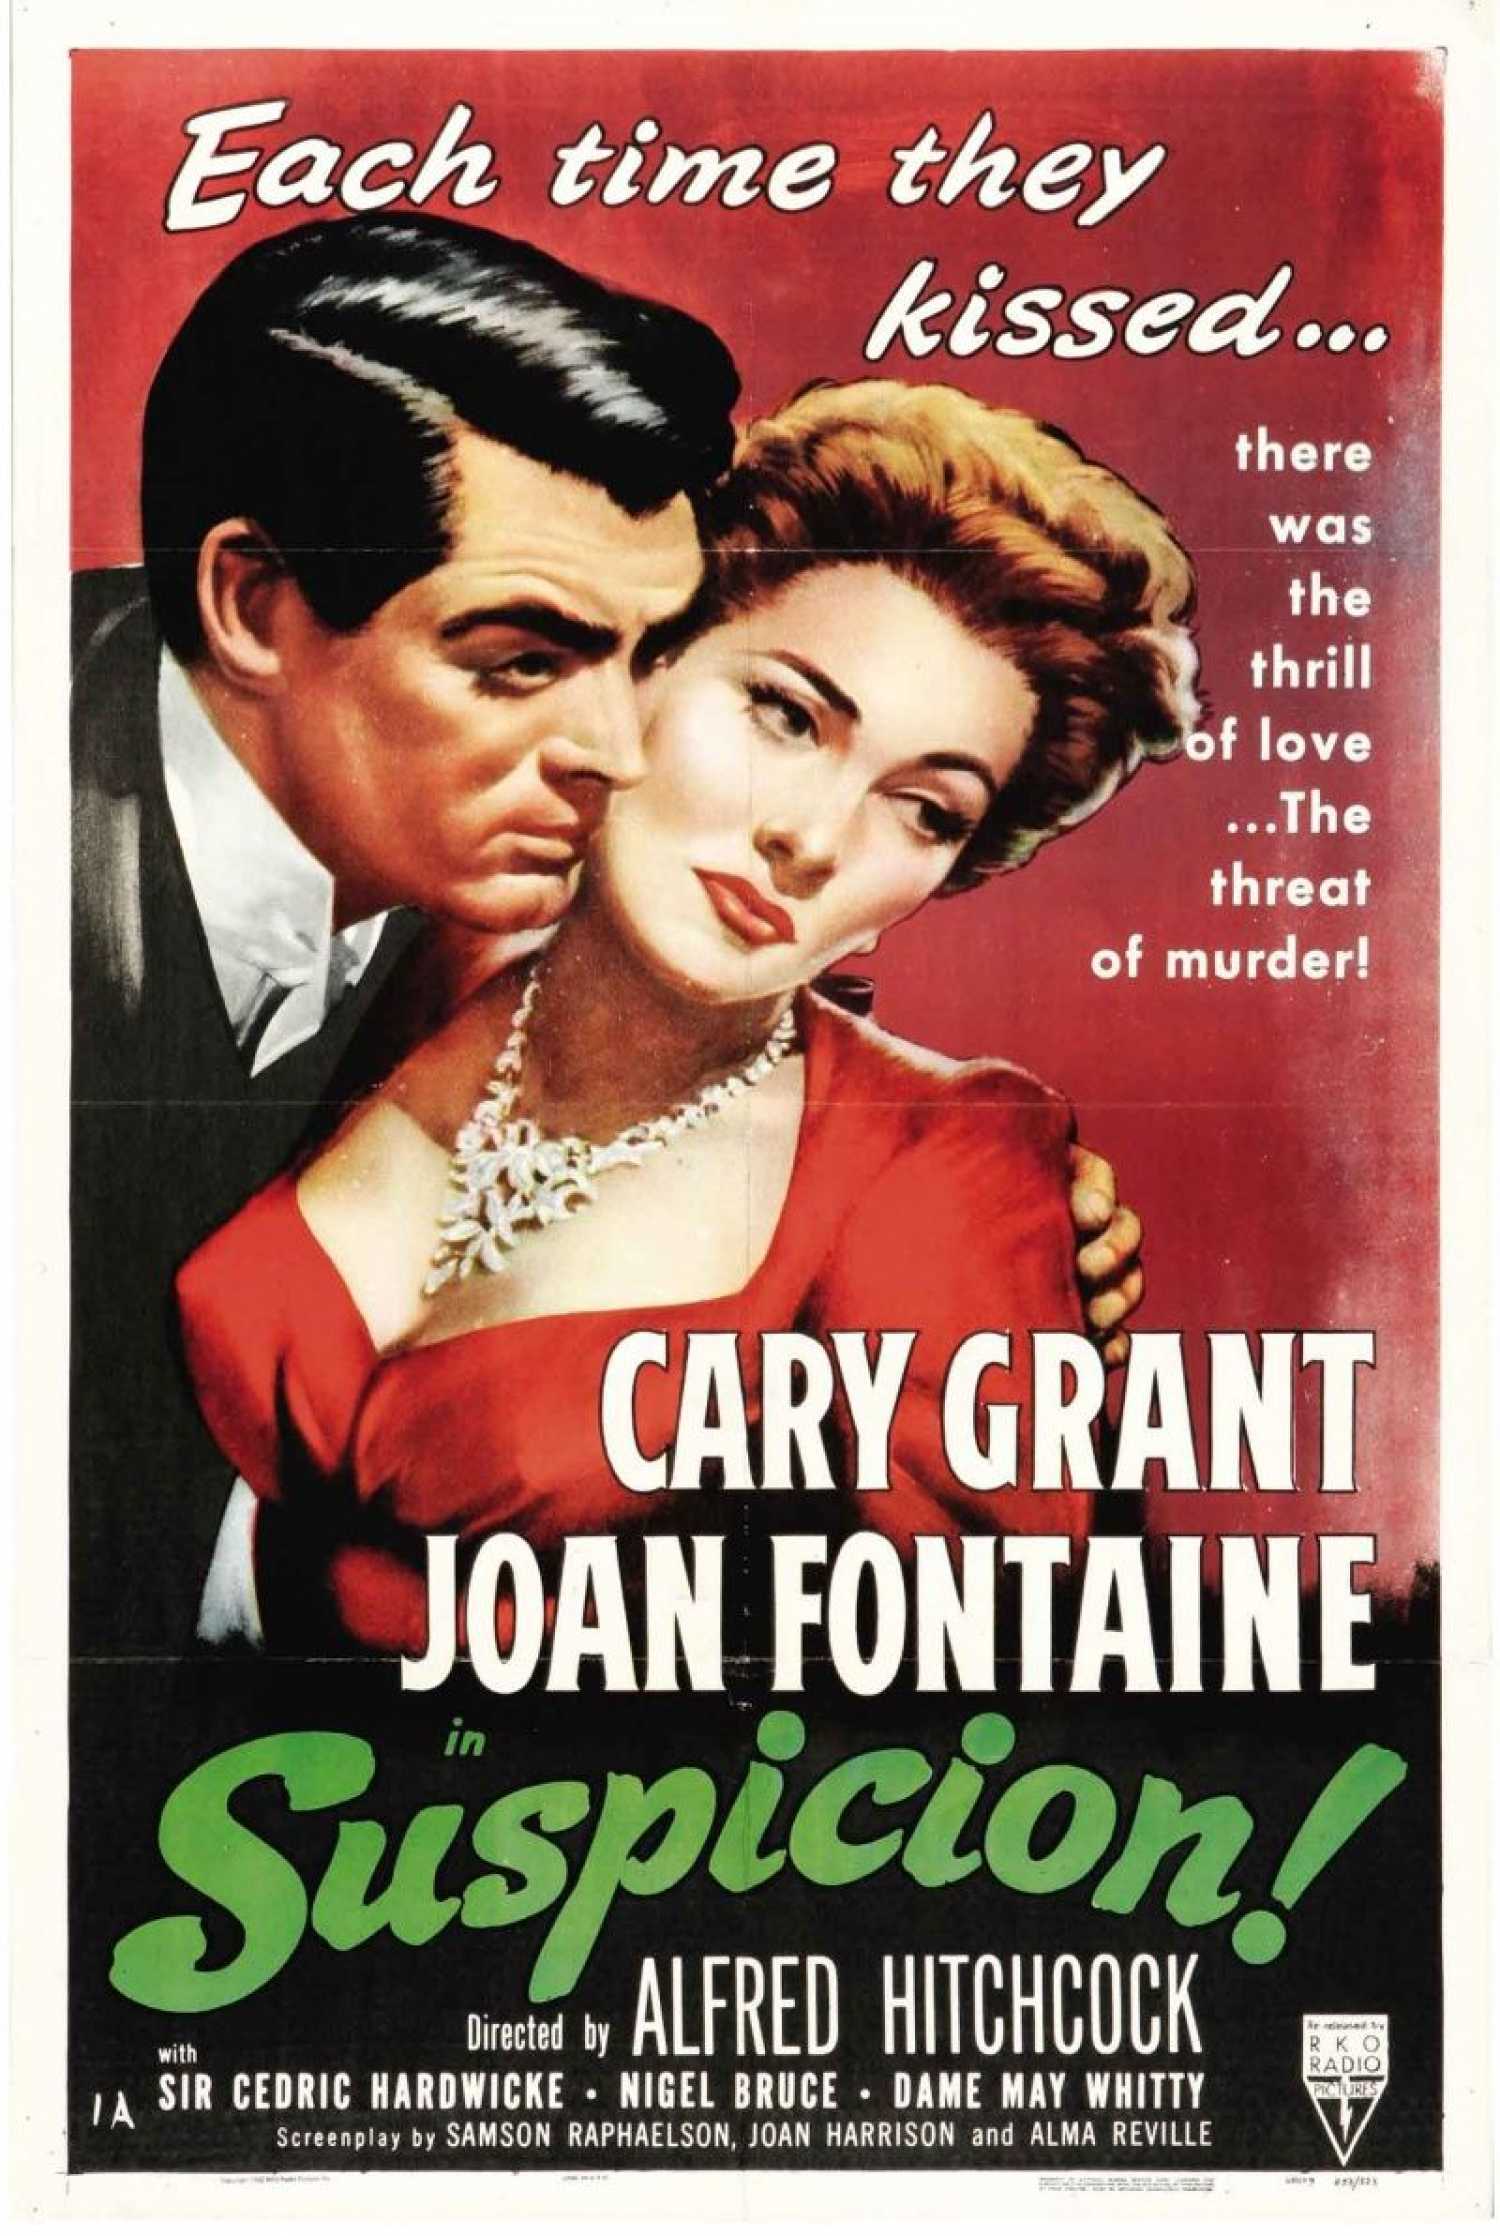 Cary Grant in Suspicion